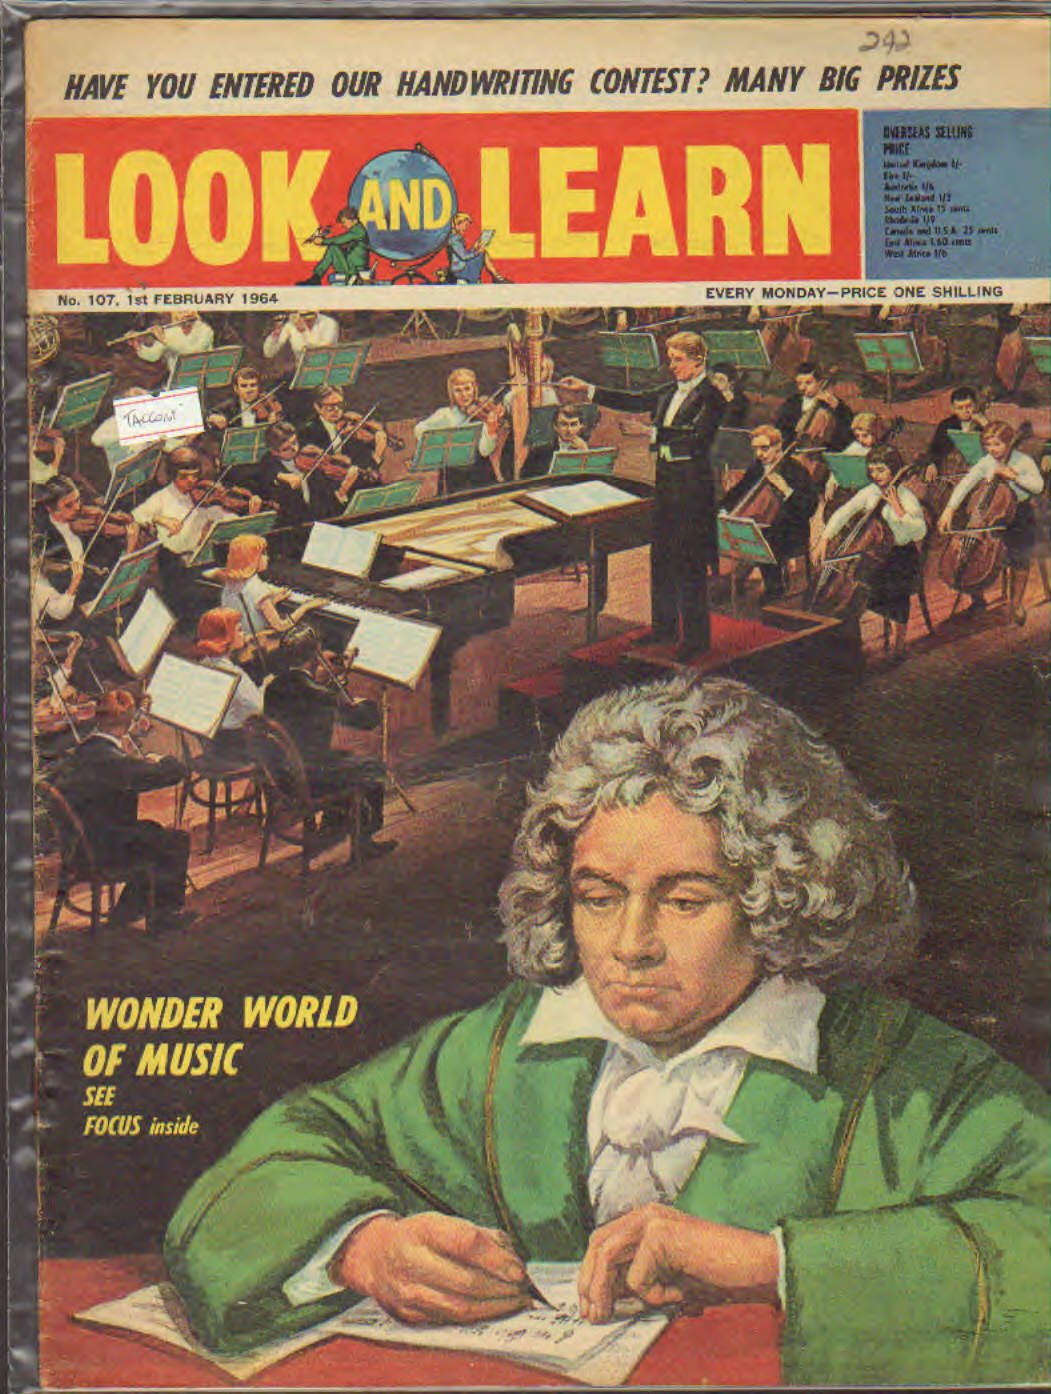 Look and Learn n.107 contiene illustrazioni di Tacconi